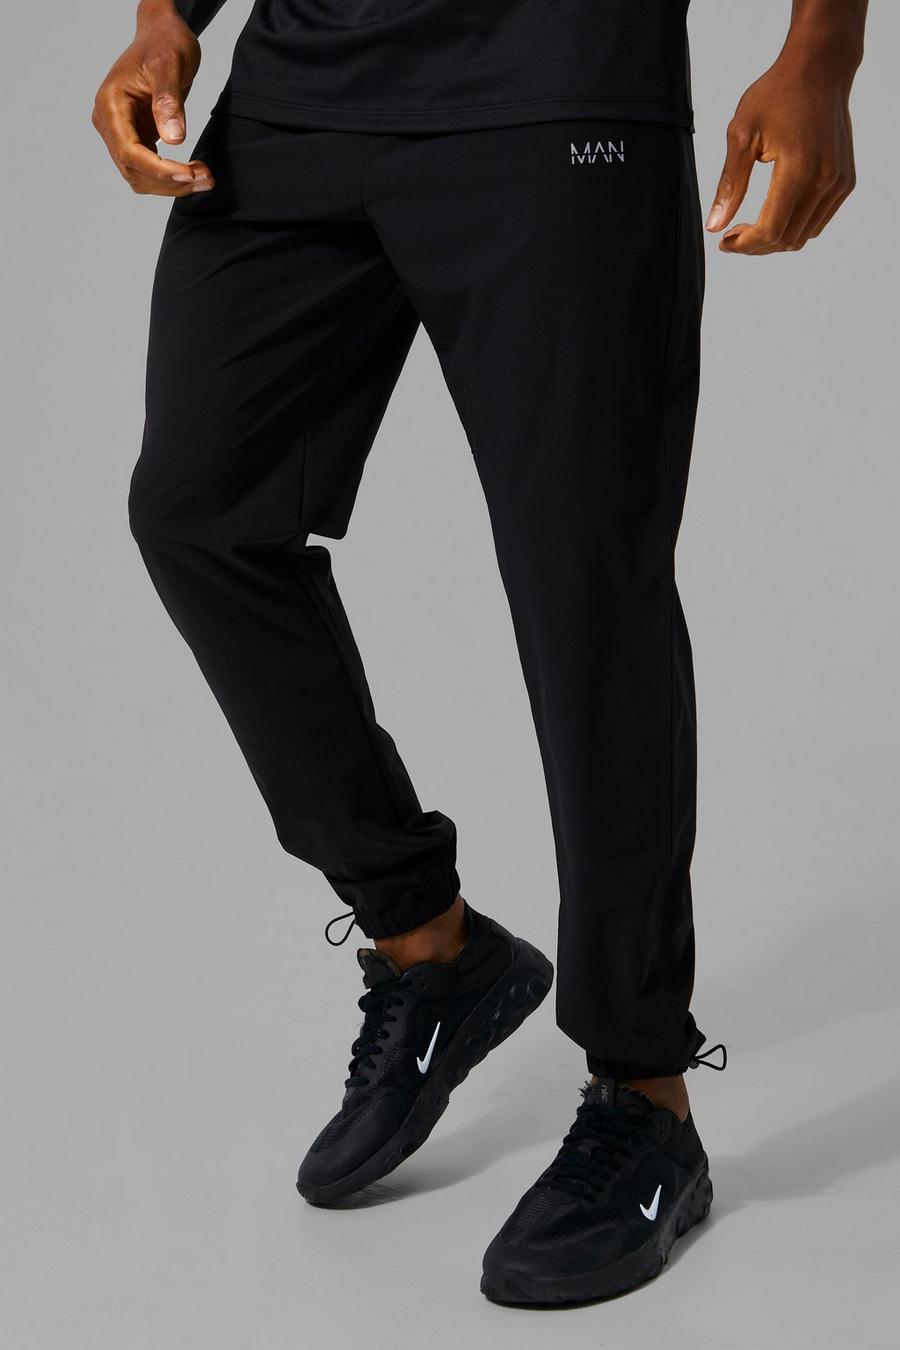 Pantalón deportivo MAN Active con alamar en el bajo y cordón elástico, Black negro